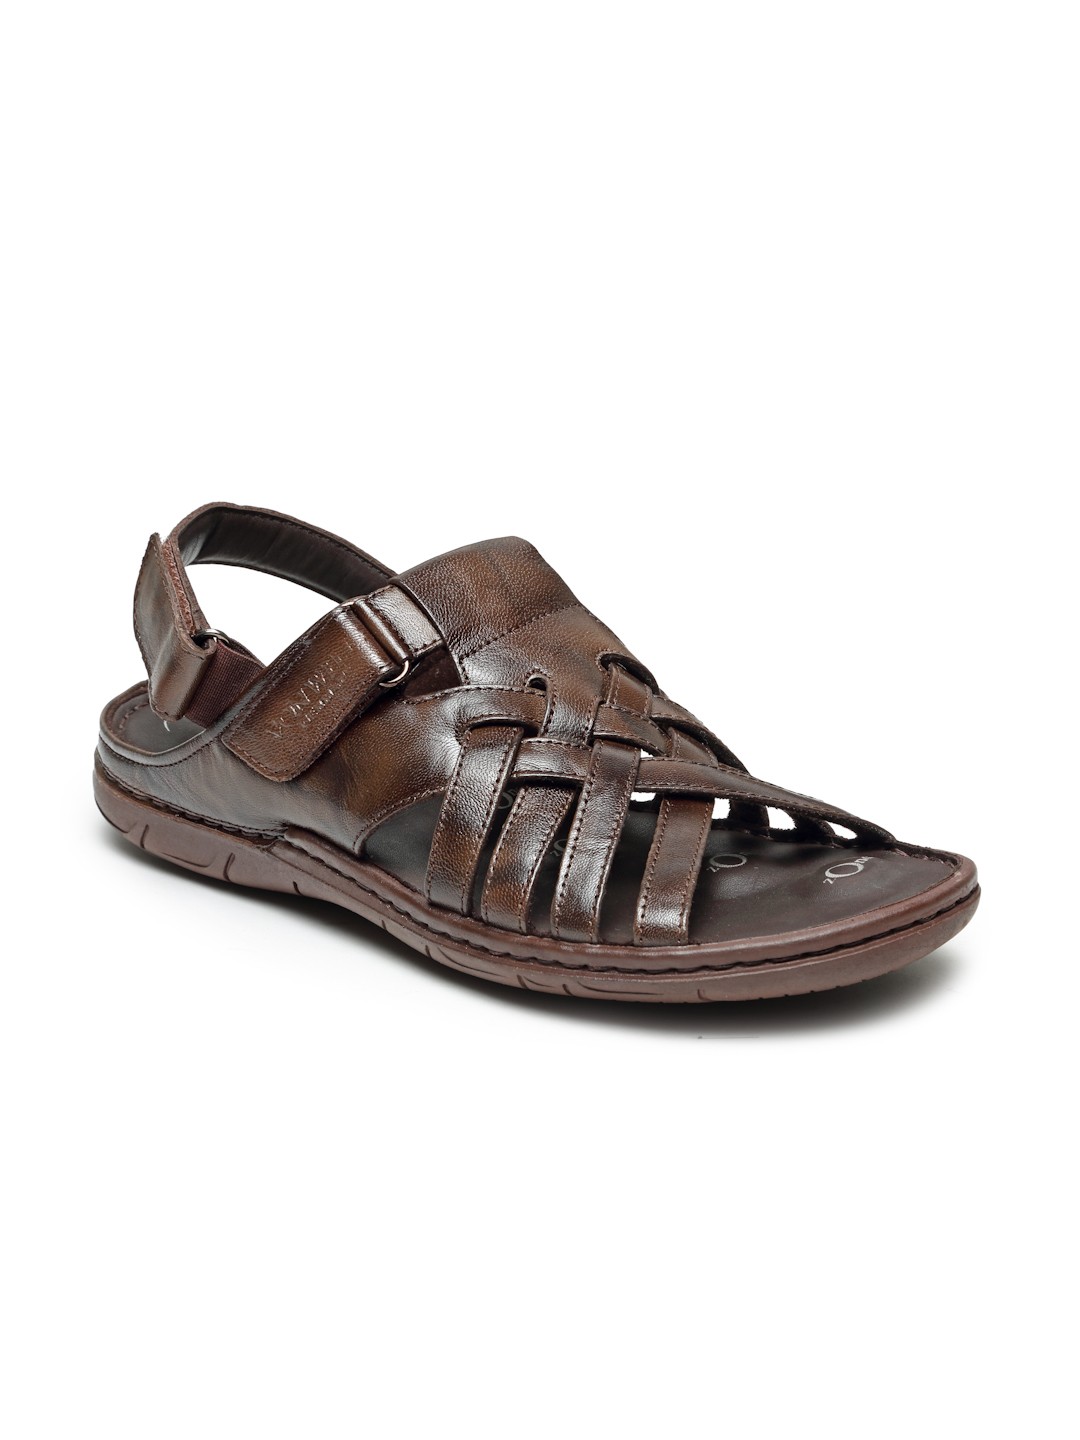 VON WELLX GERMANY comfort men's brown sandals STRIDE